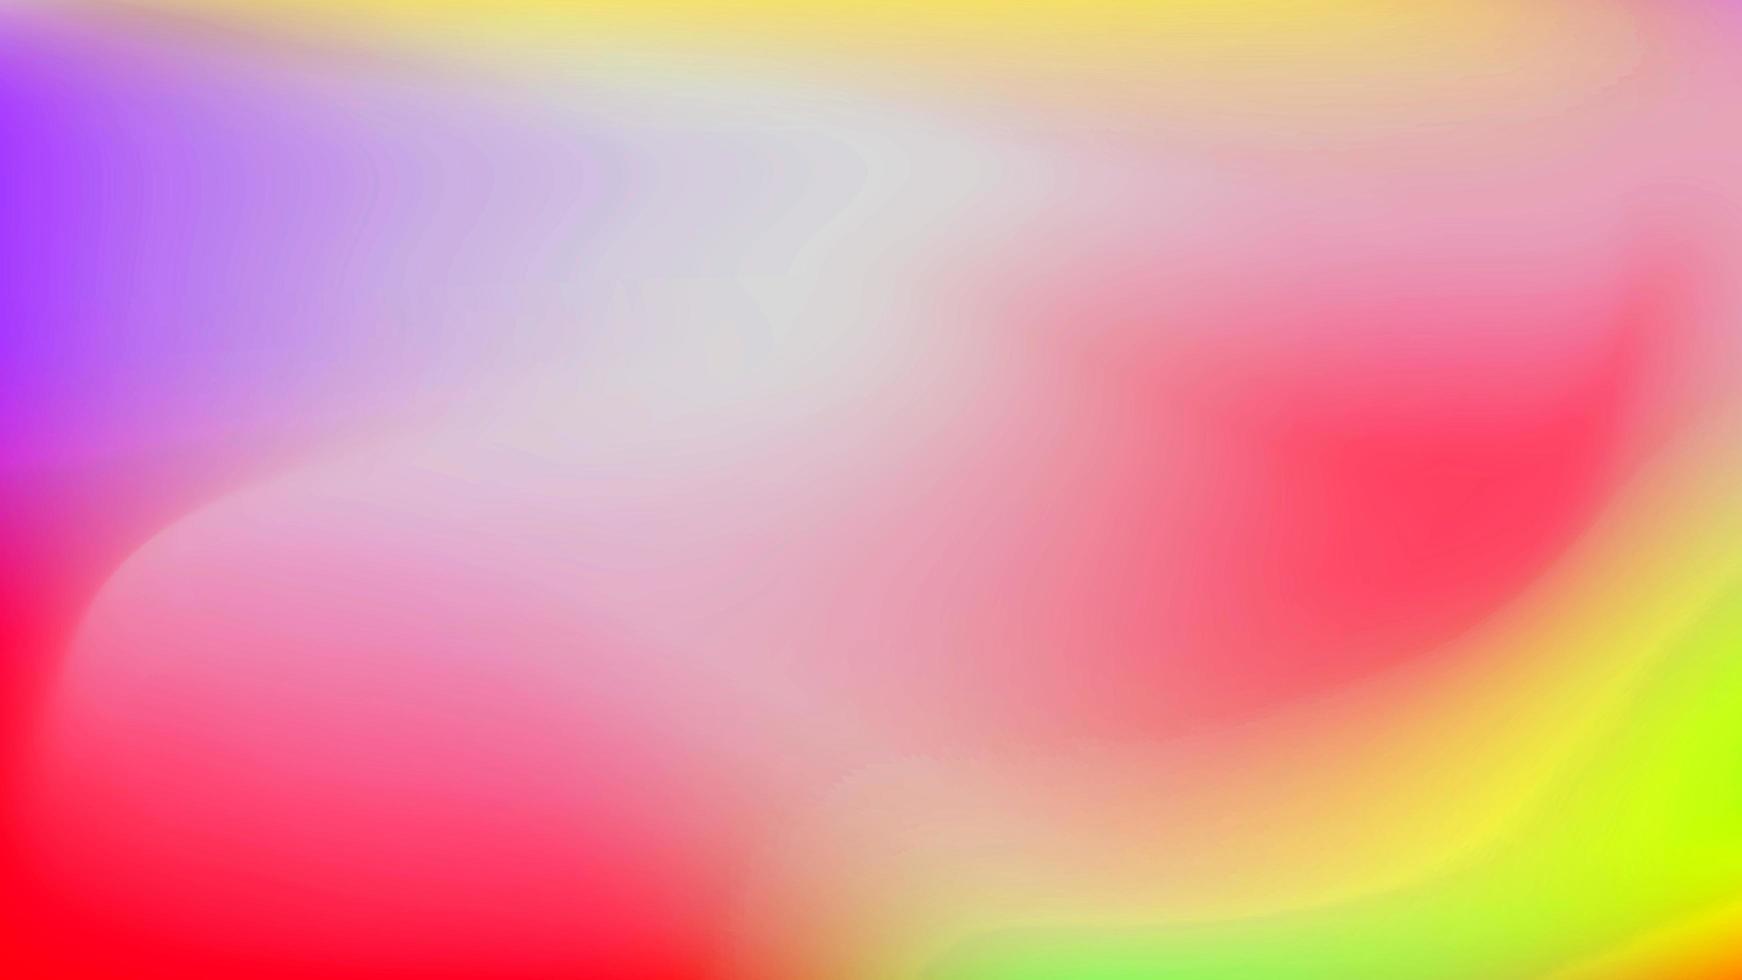 abstracte glanzende wazig gradiënt zeepbel cirkel kleurrijke heldere patroon met vloeiende grafische gradiënt. foto